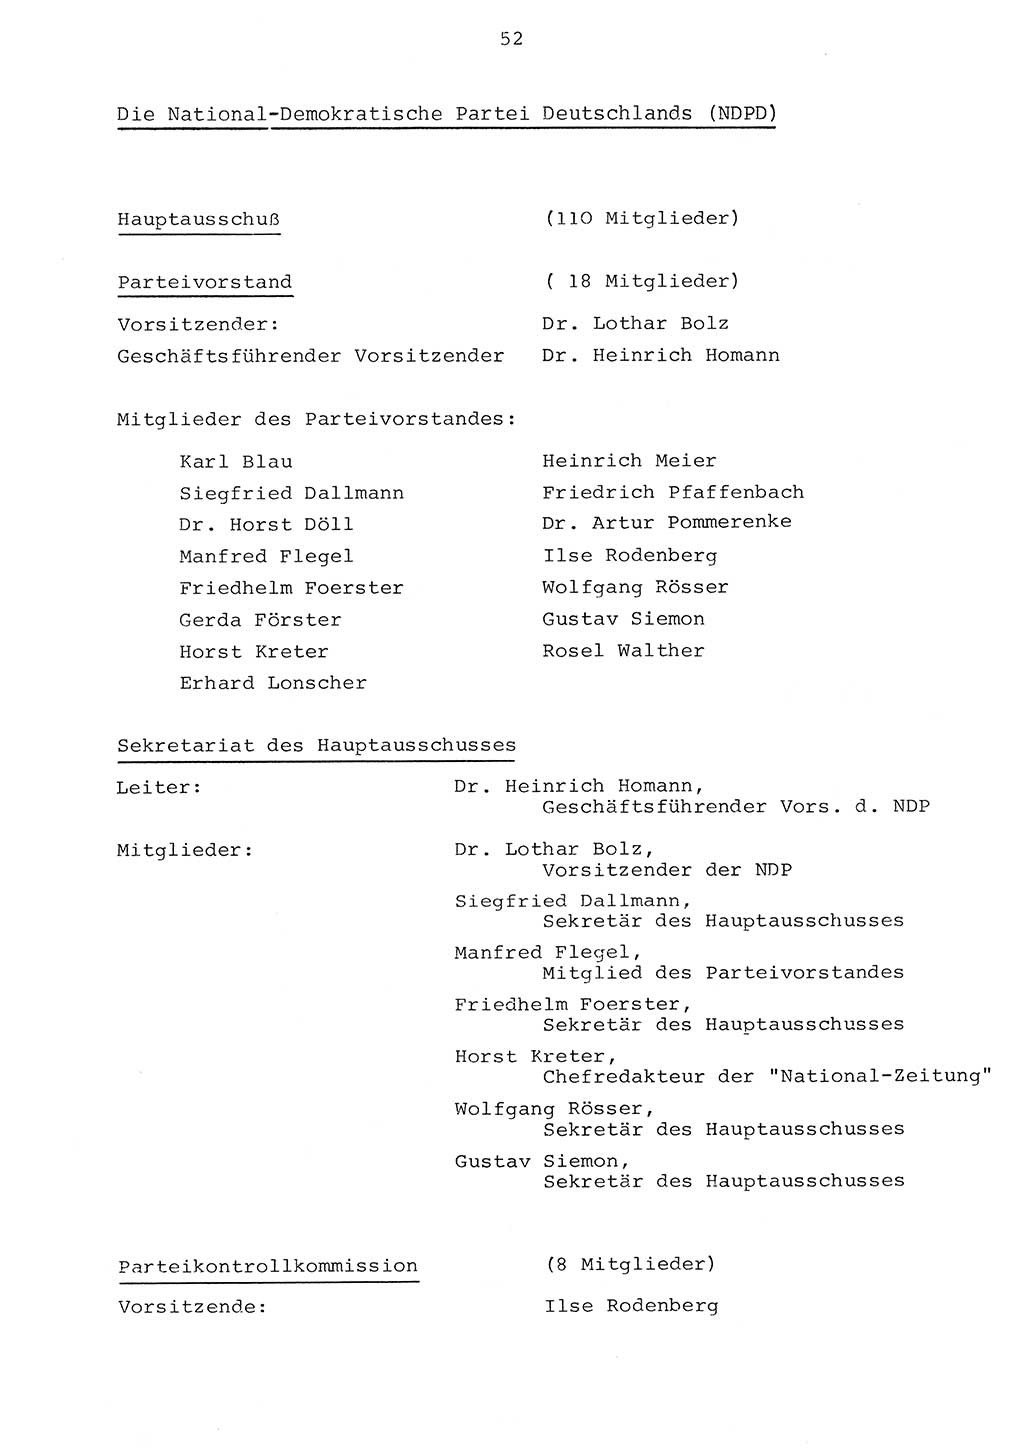 Parteiapparat der Deutschen Demokratischen Republik (DDR) 1970, Seite 52 (Parteiapp. DDR 1970, S. 52)